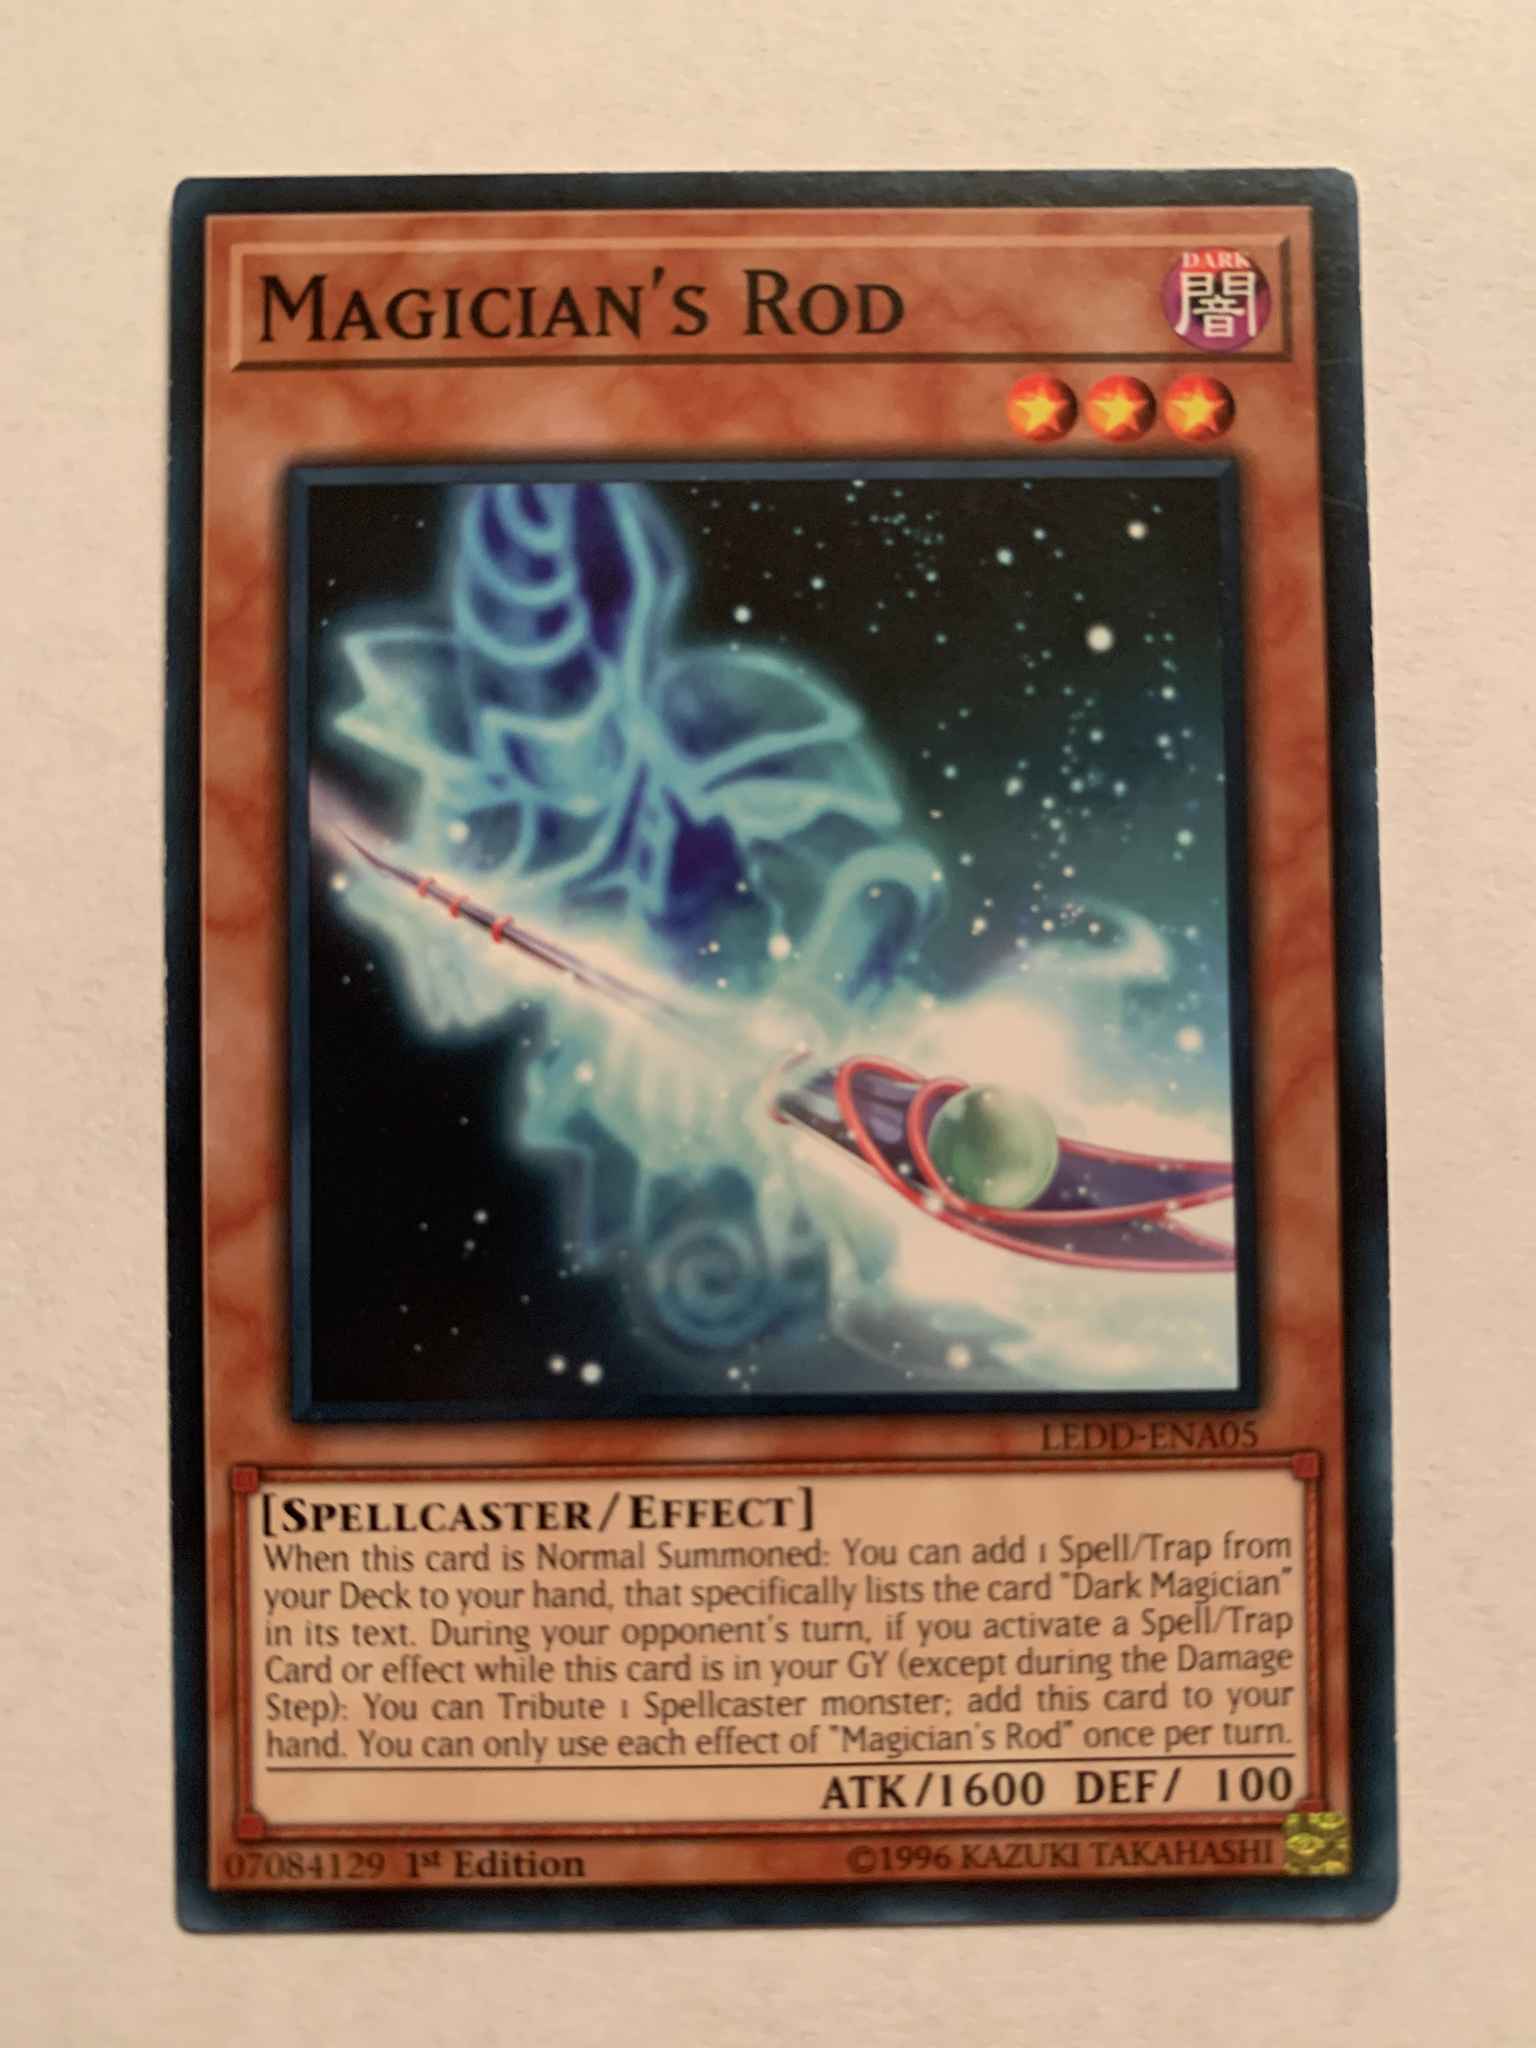 Yugioh 3x Common Magician’s Rod LEDD-ENA05 LP-VLP 